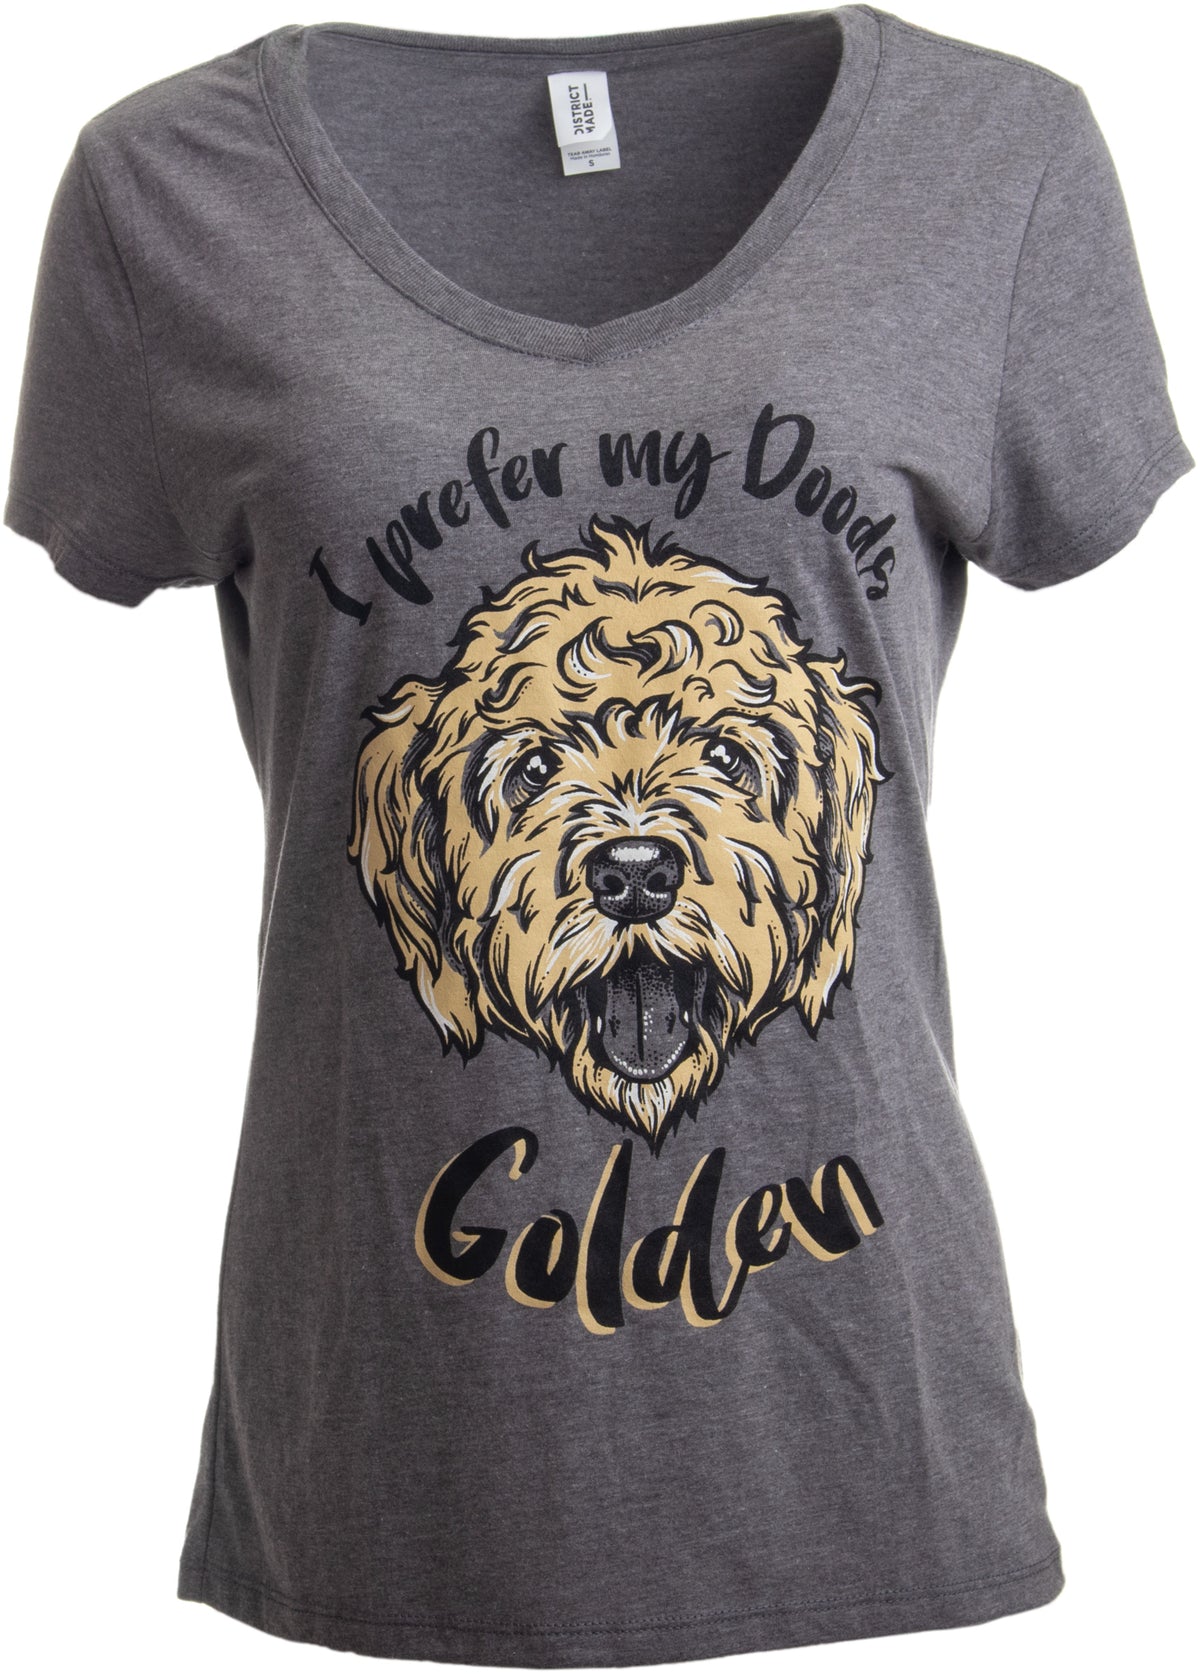 I Prefer My Doods Golden | Funny Goldendoodle Golden Doodle Dog V-neck T-shirt